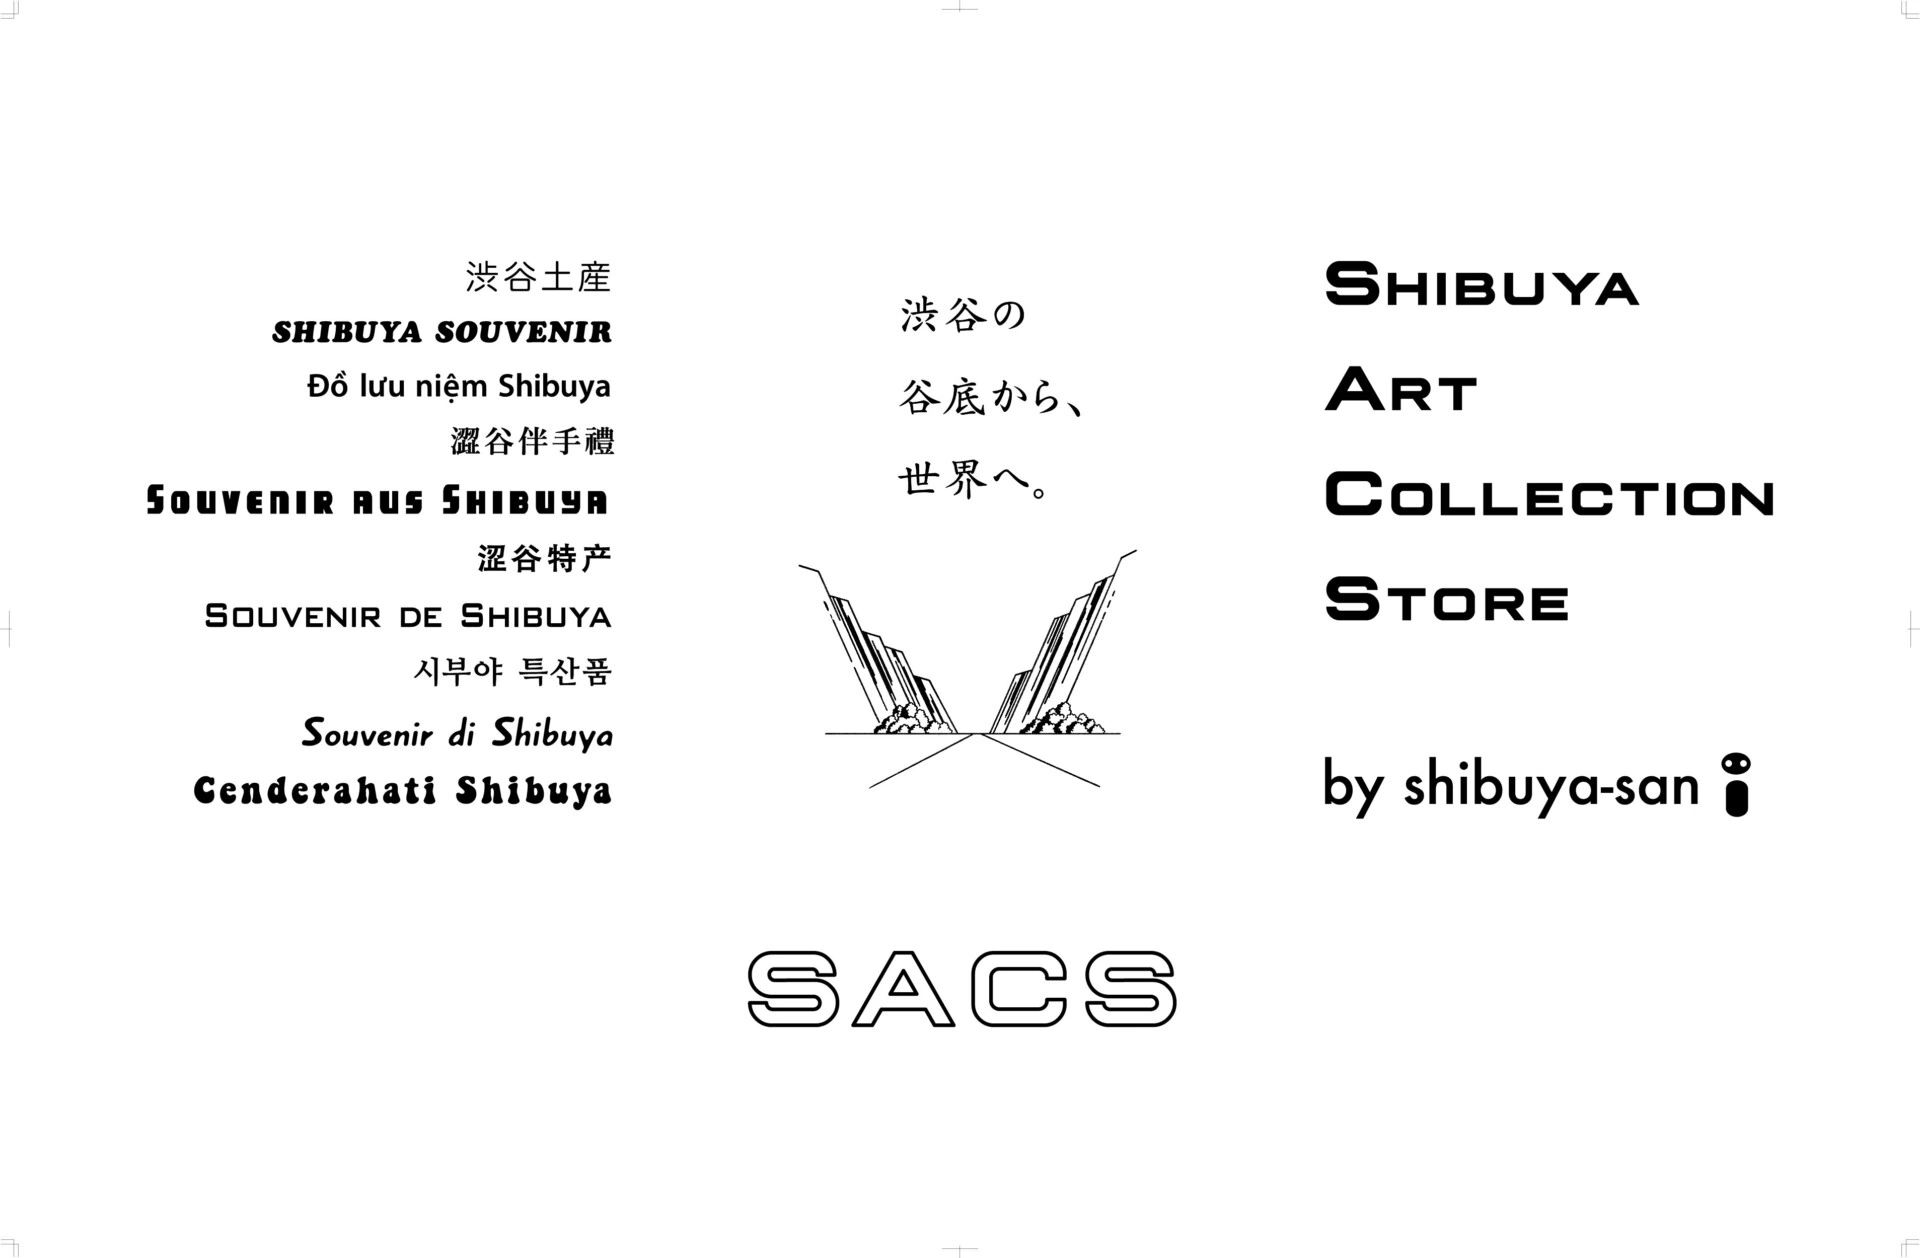 SACS Shibuya Art Collection Store